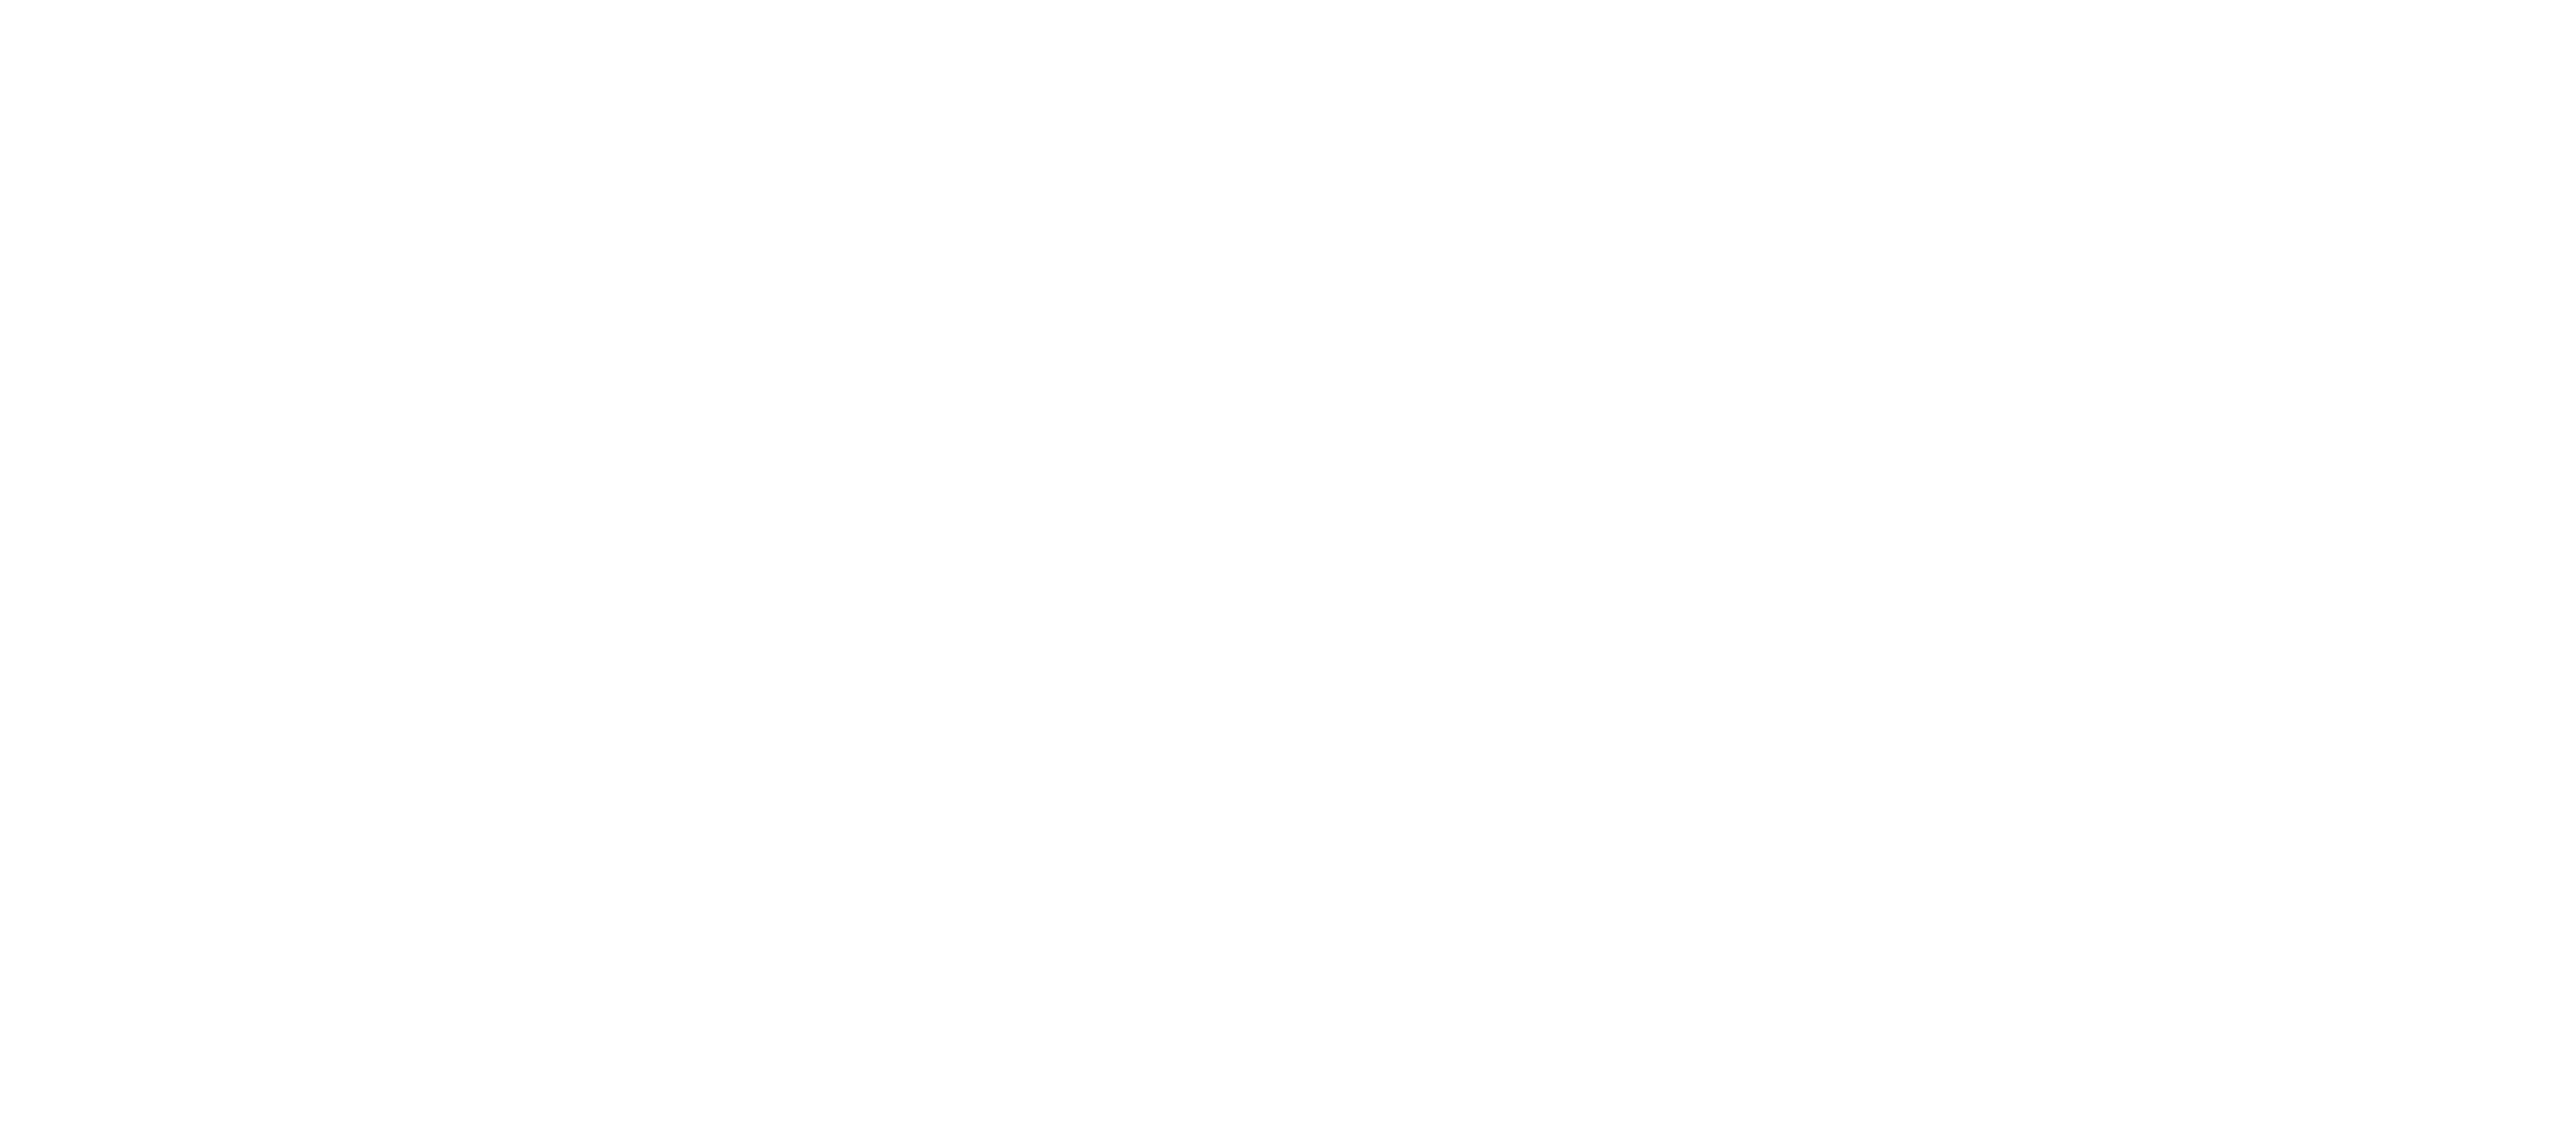 Cannock Chase National Landscape logo